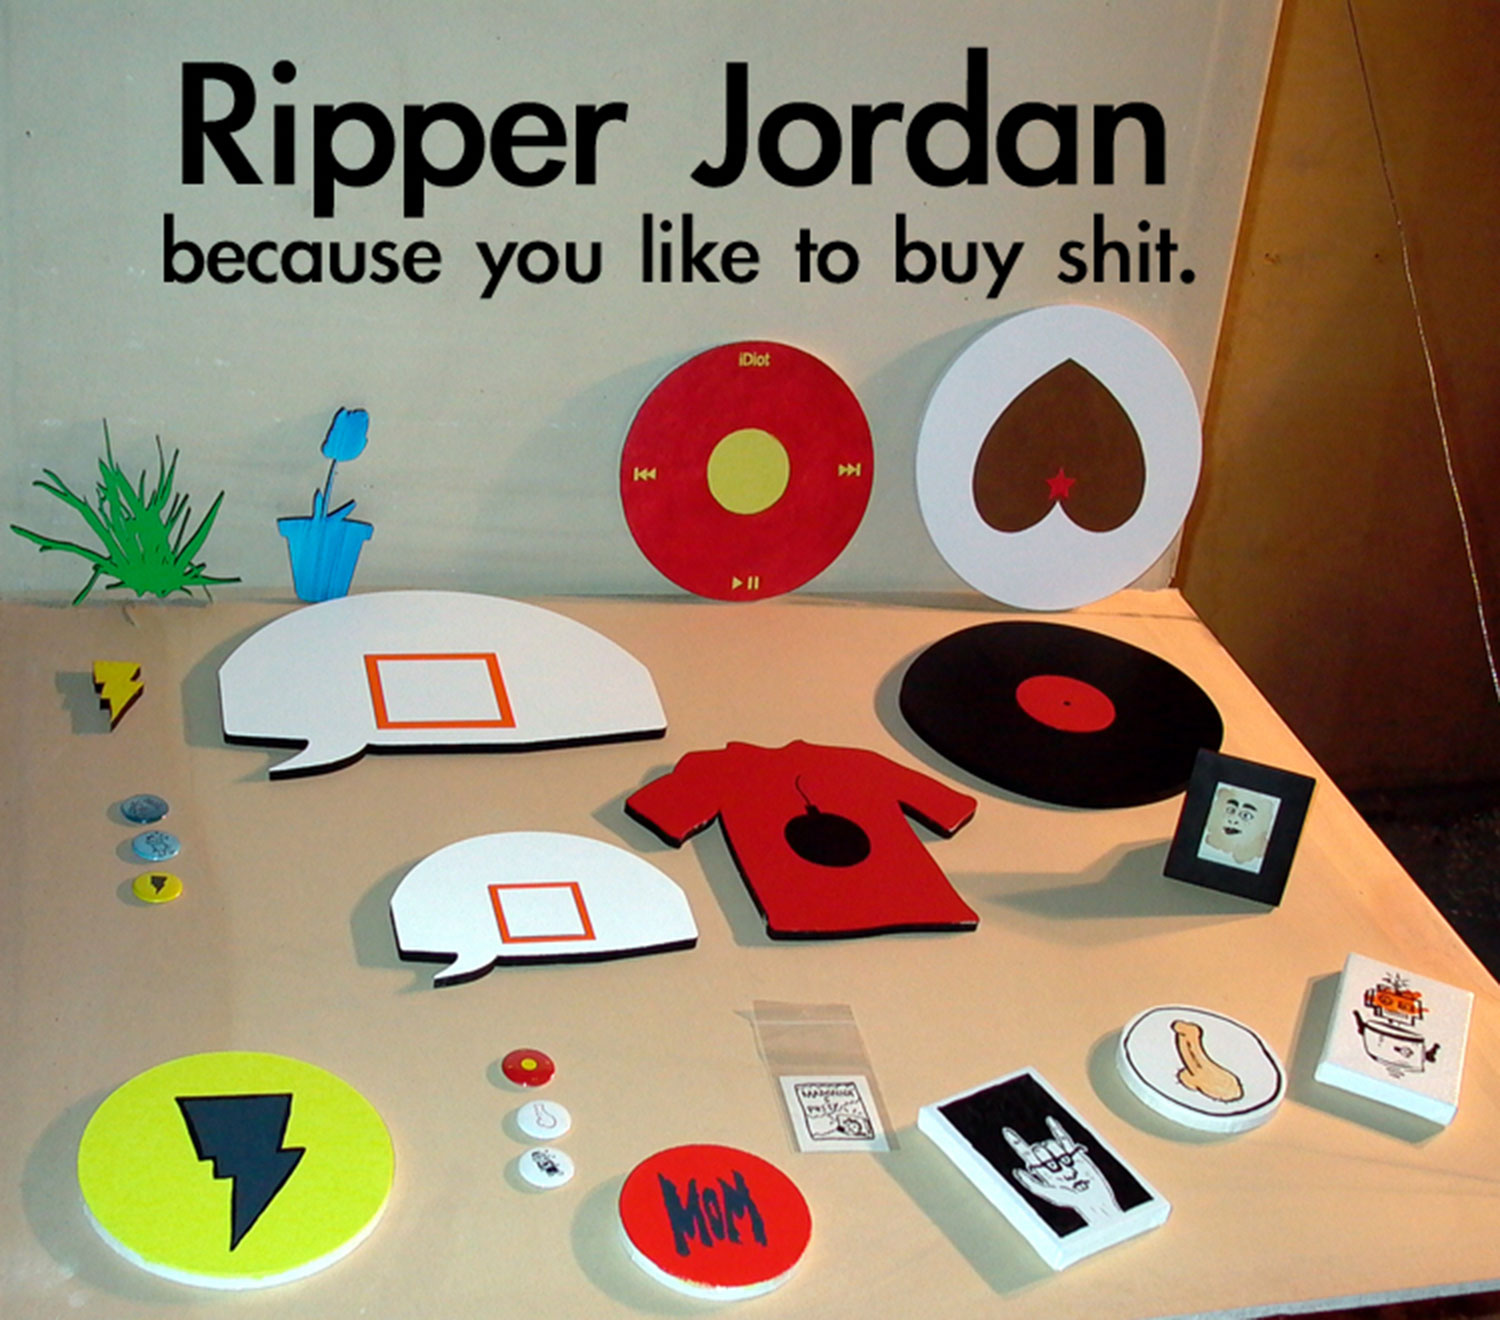 Ripper Jordan